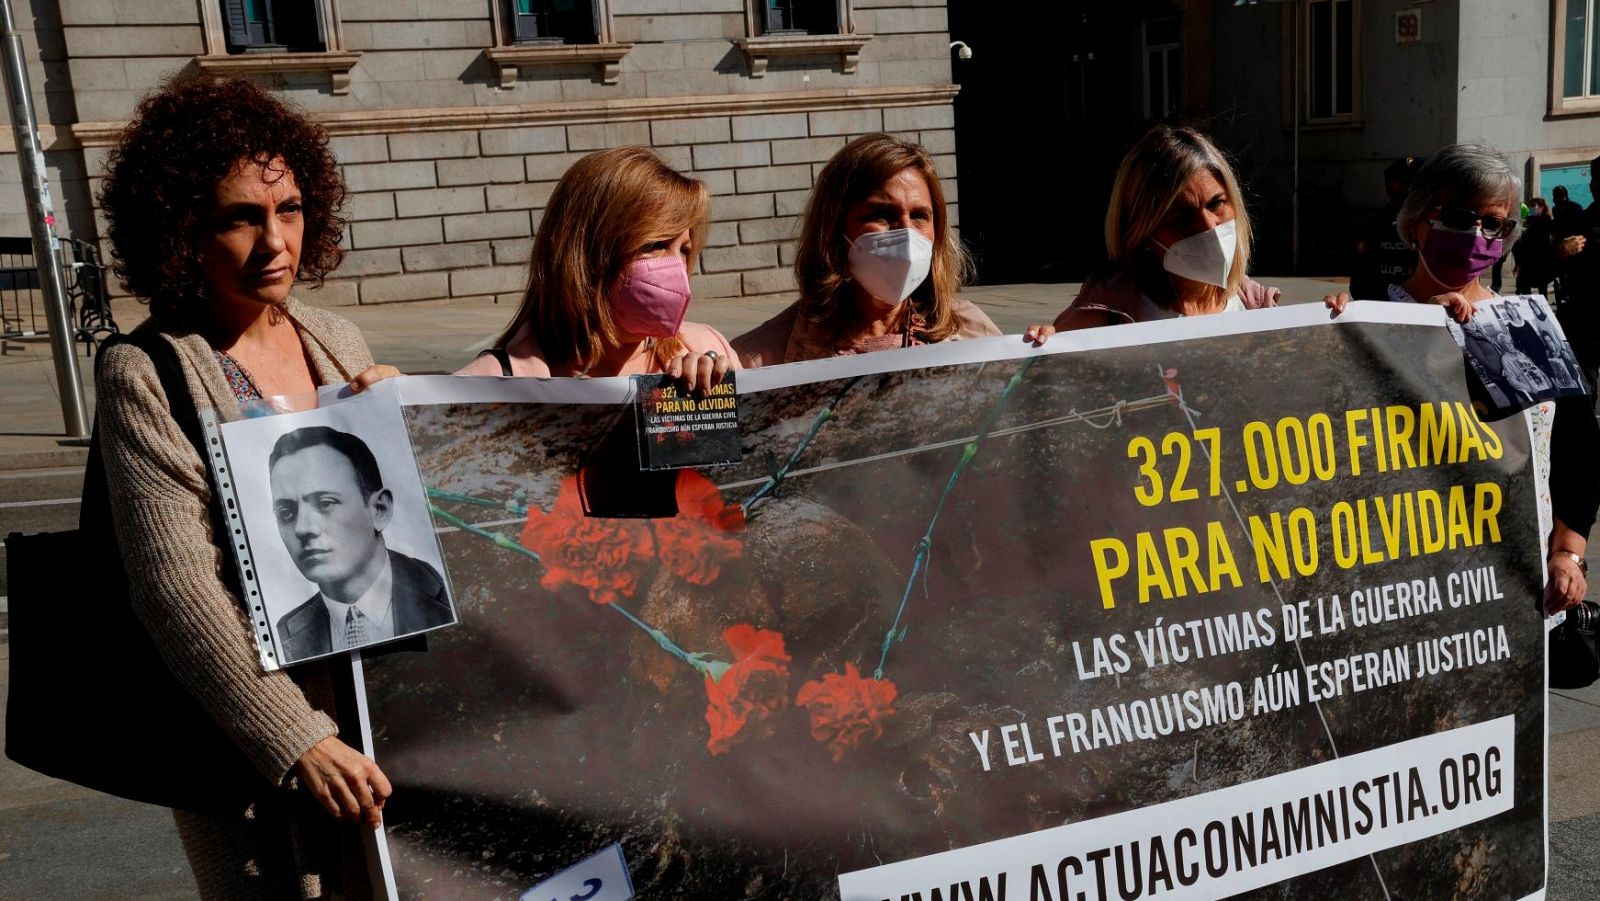 PSOE y UP pactan modificar la Ley de Amnistía y posibilitan investigar los crímenes del franquismo